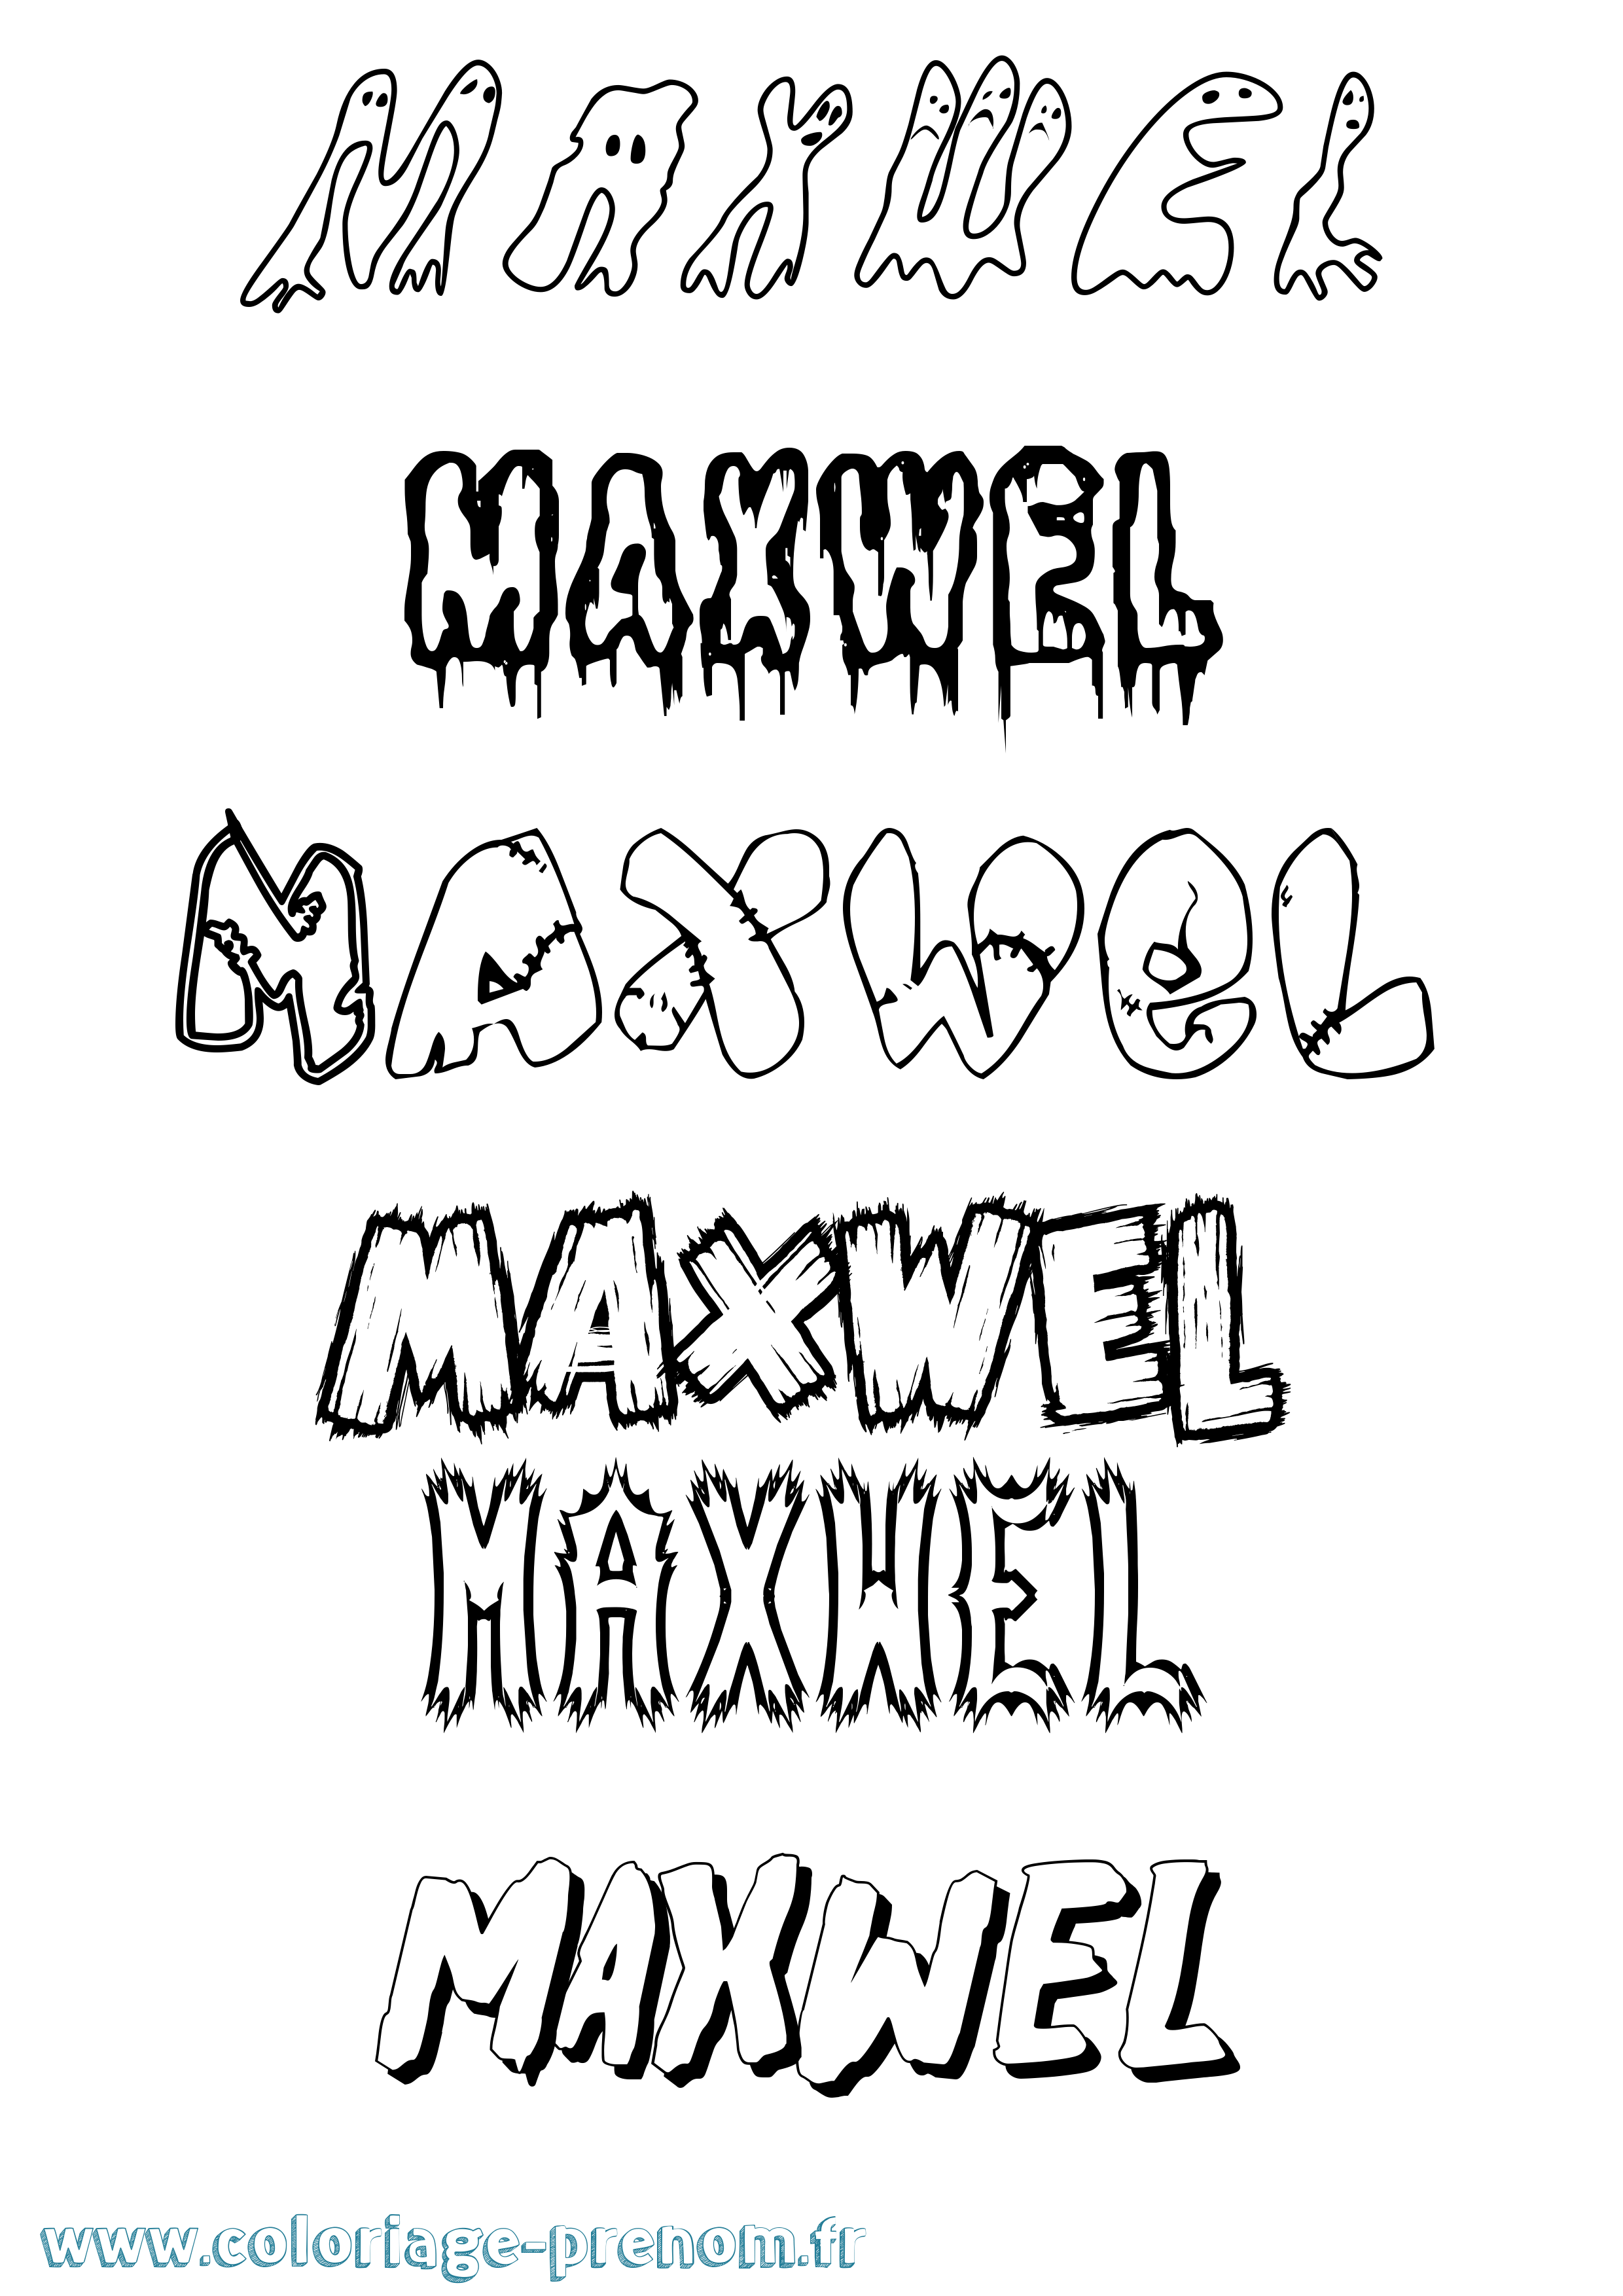 Coloriage prénom Maxwel Frisson